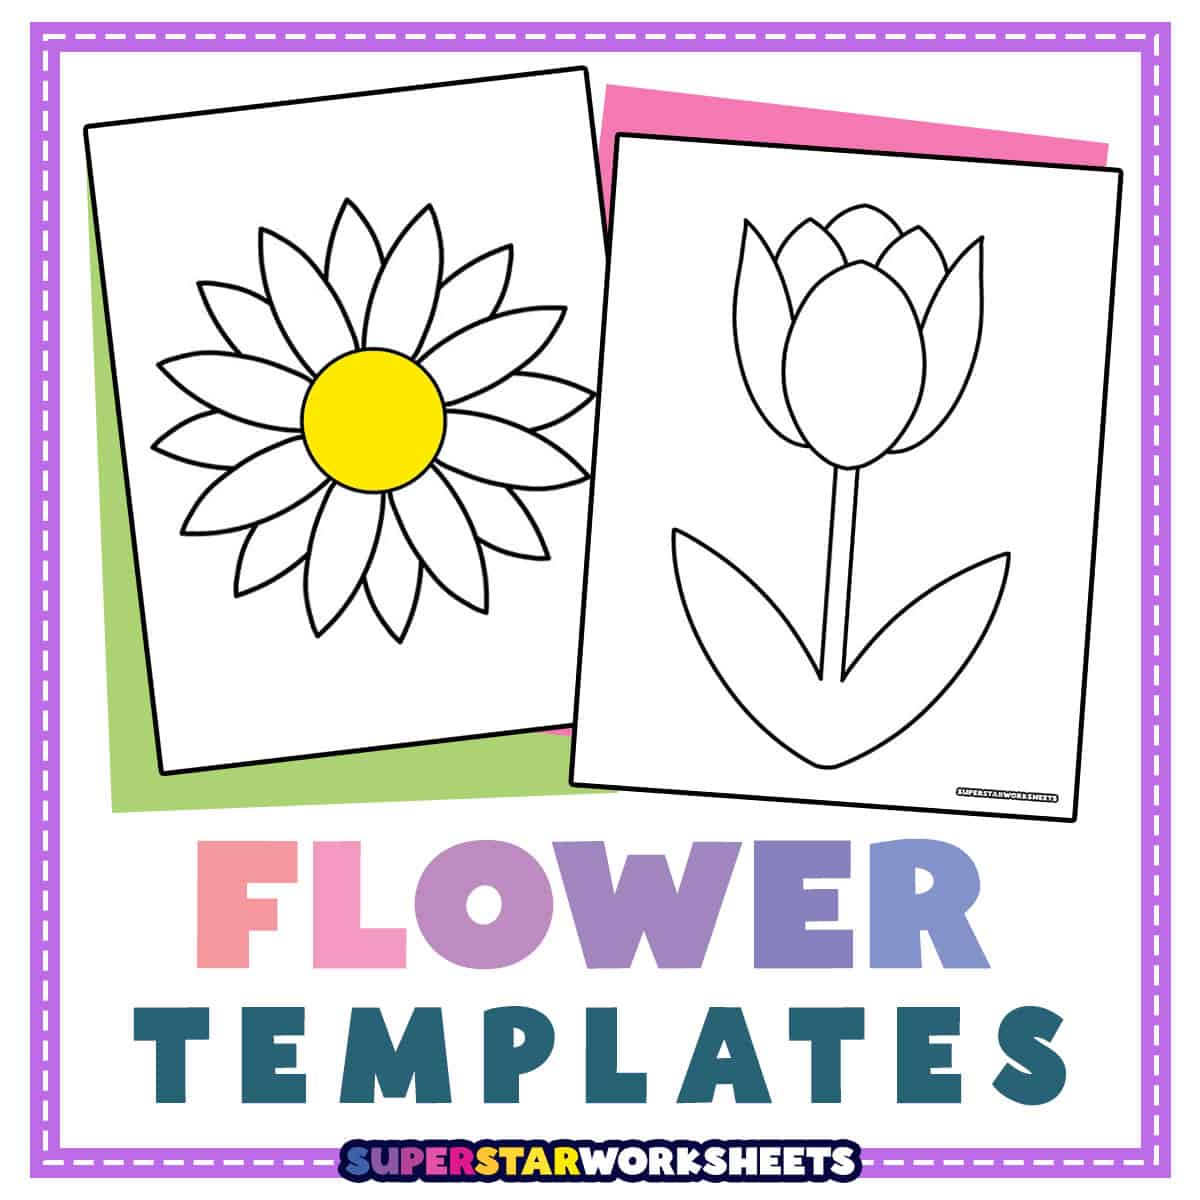 Flower Templates Superstar Worksheets